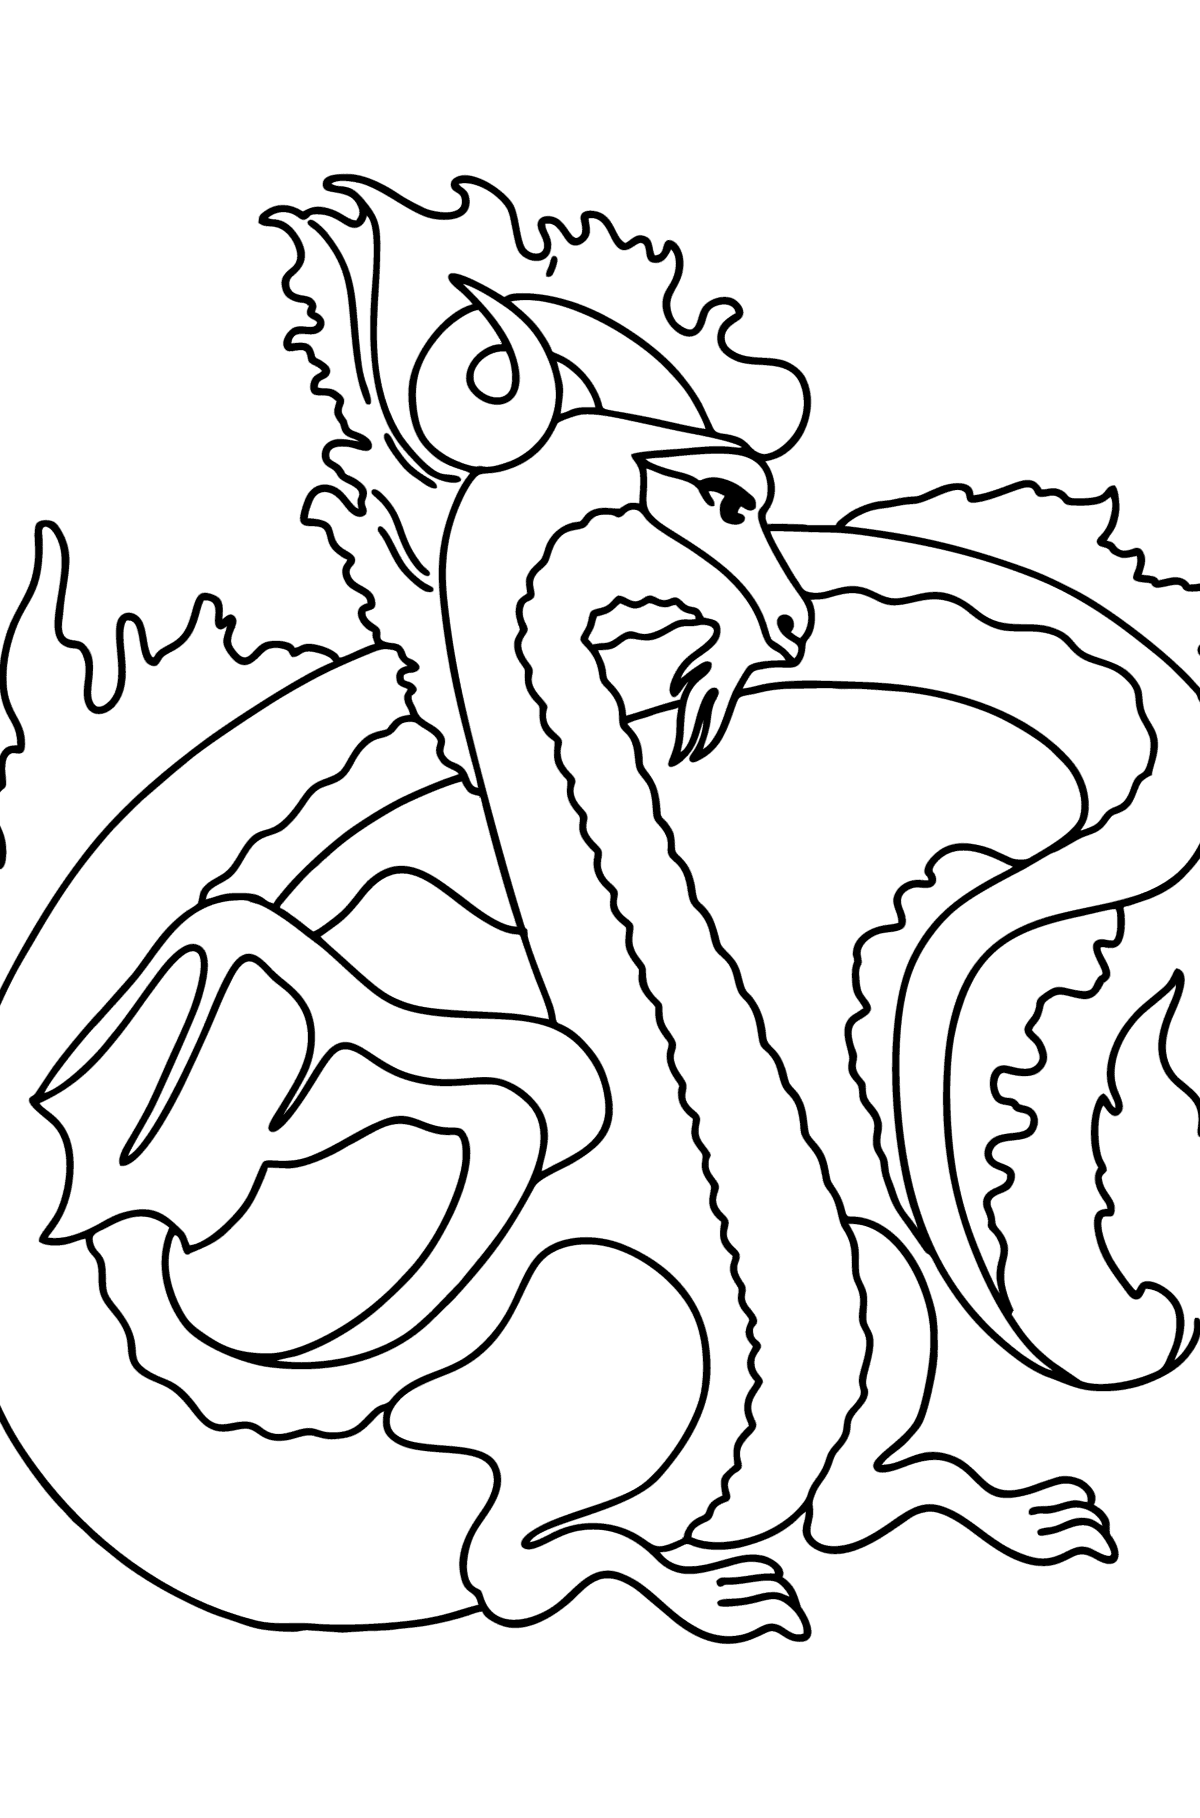 Desen de colorat dragon mitic - Desene de colorat pentru copii